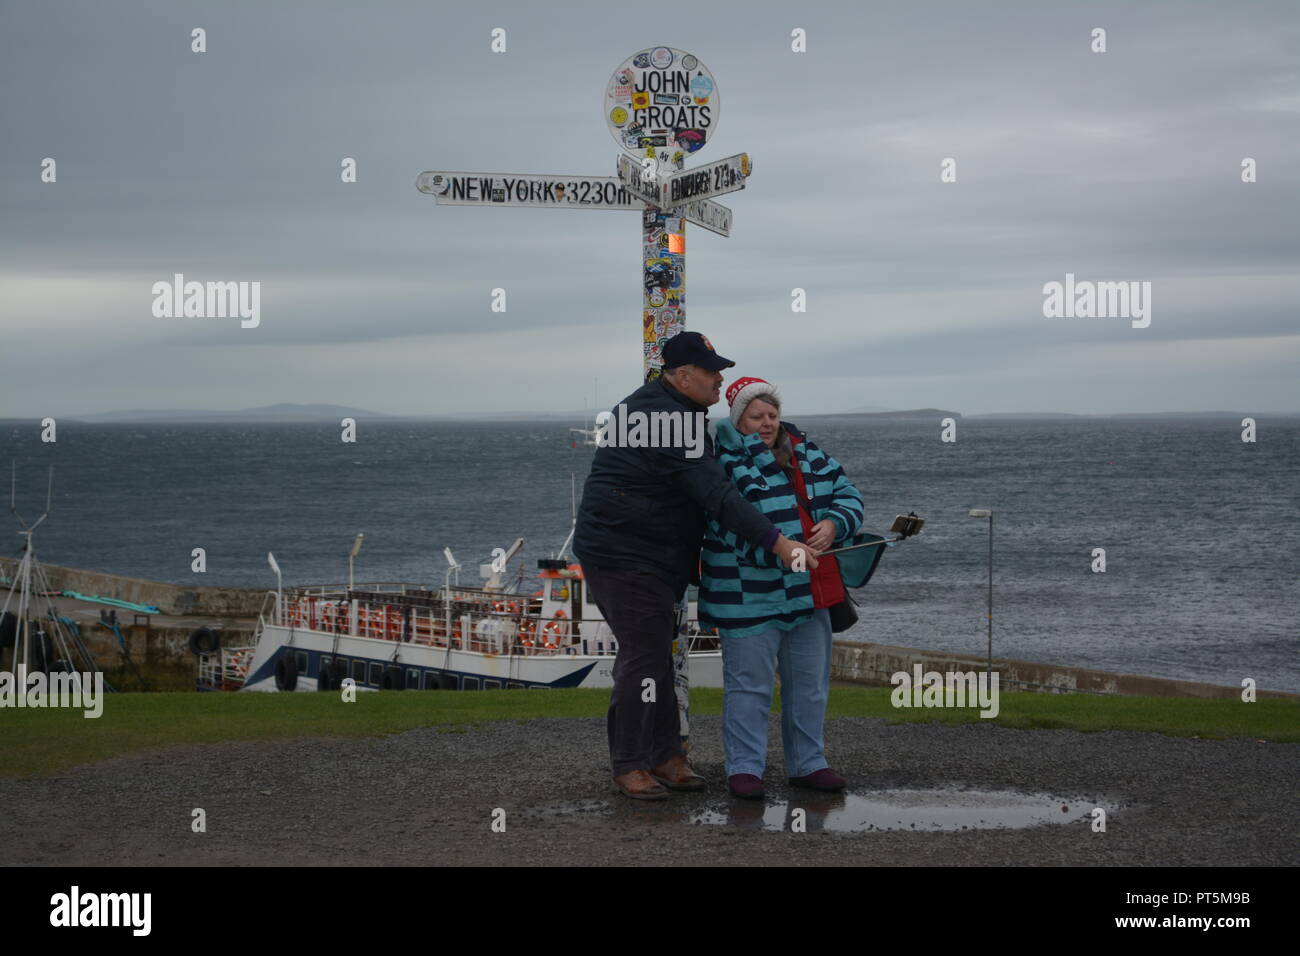 Personnes âgées touristes vacanciers prenant une photographie selfies sous le John O'Groats signpost Caithness Ecosse Grande-Bretagne UK United Kingdom Banque D'Images